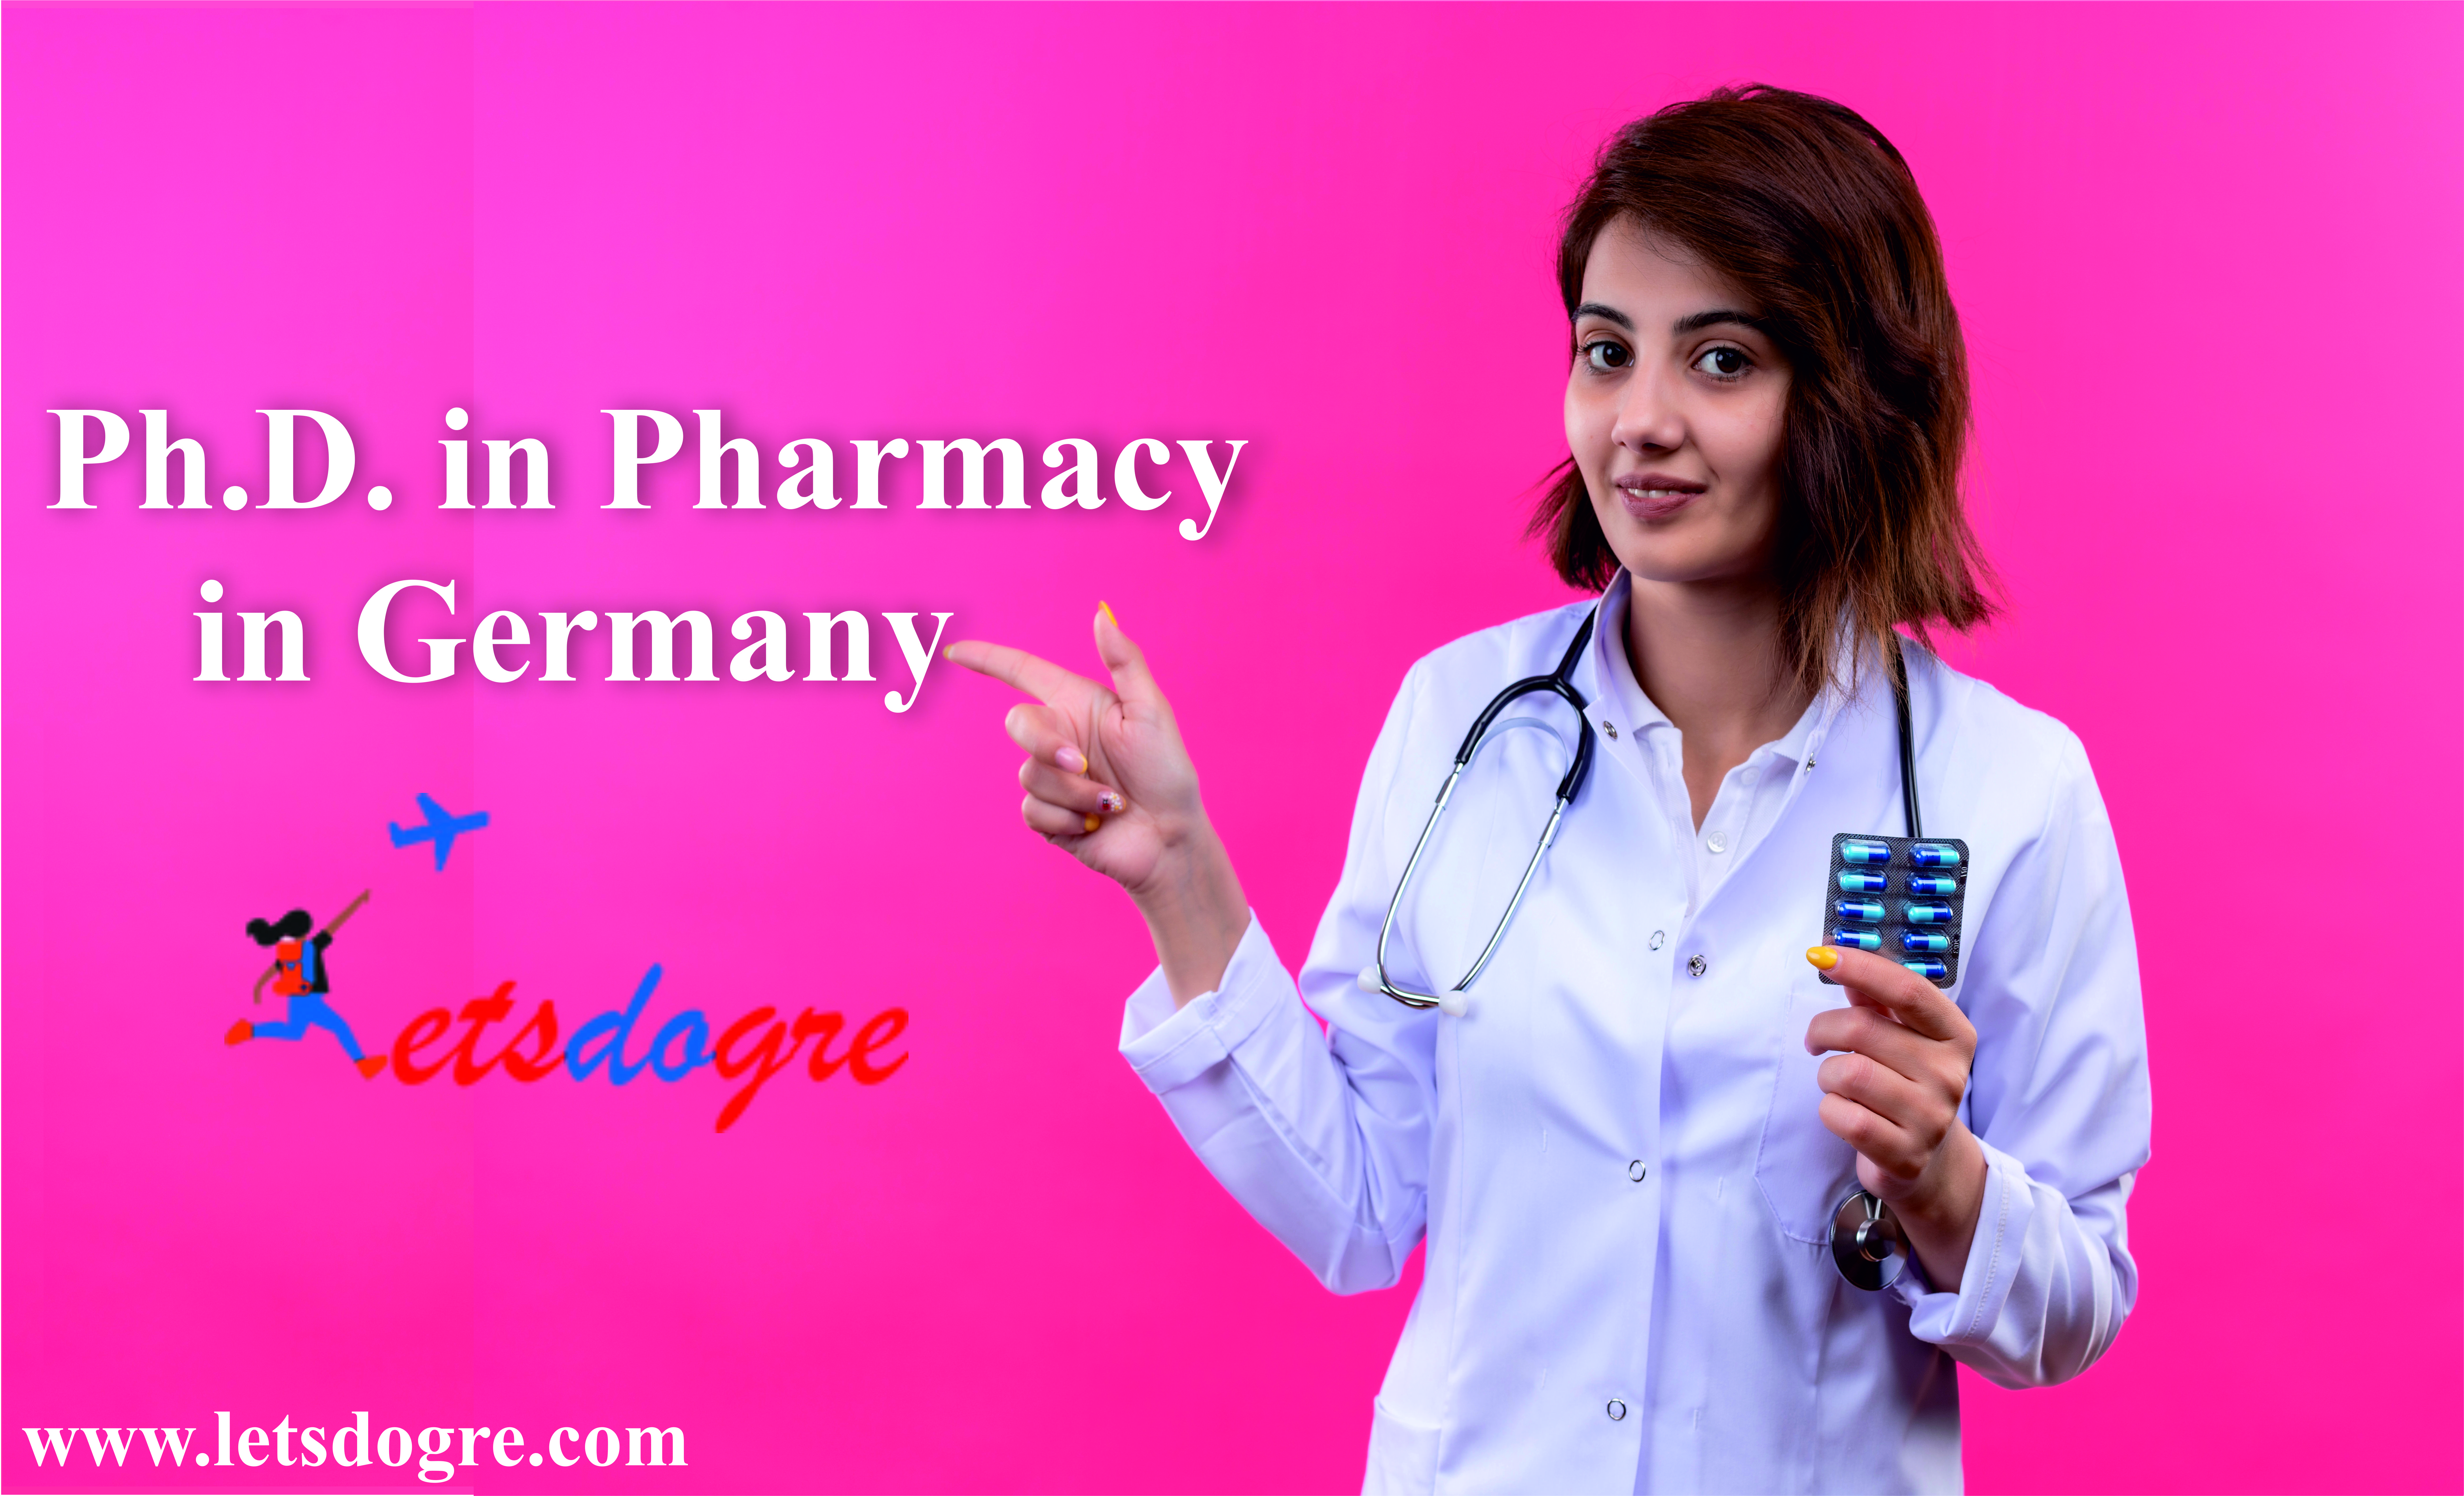 Pharmacy Ph.D. in Germany